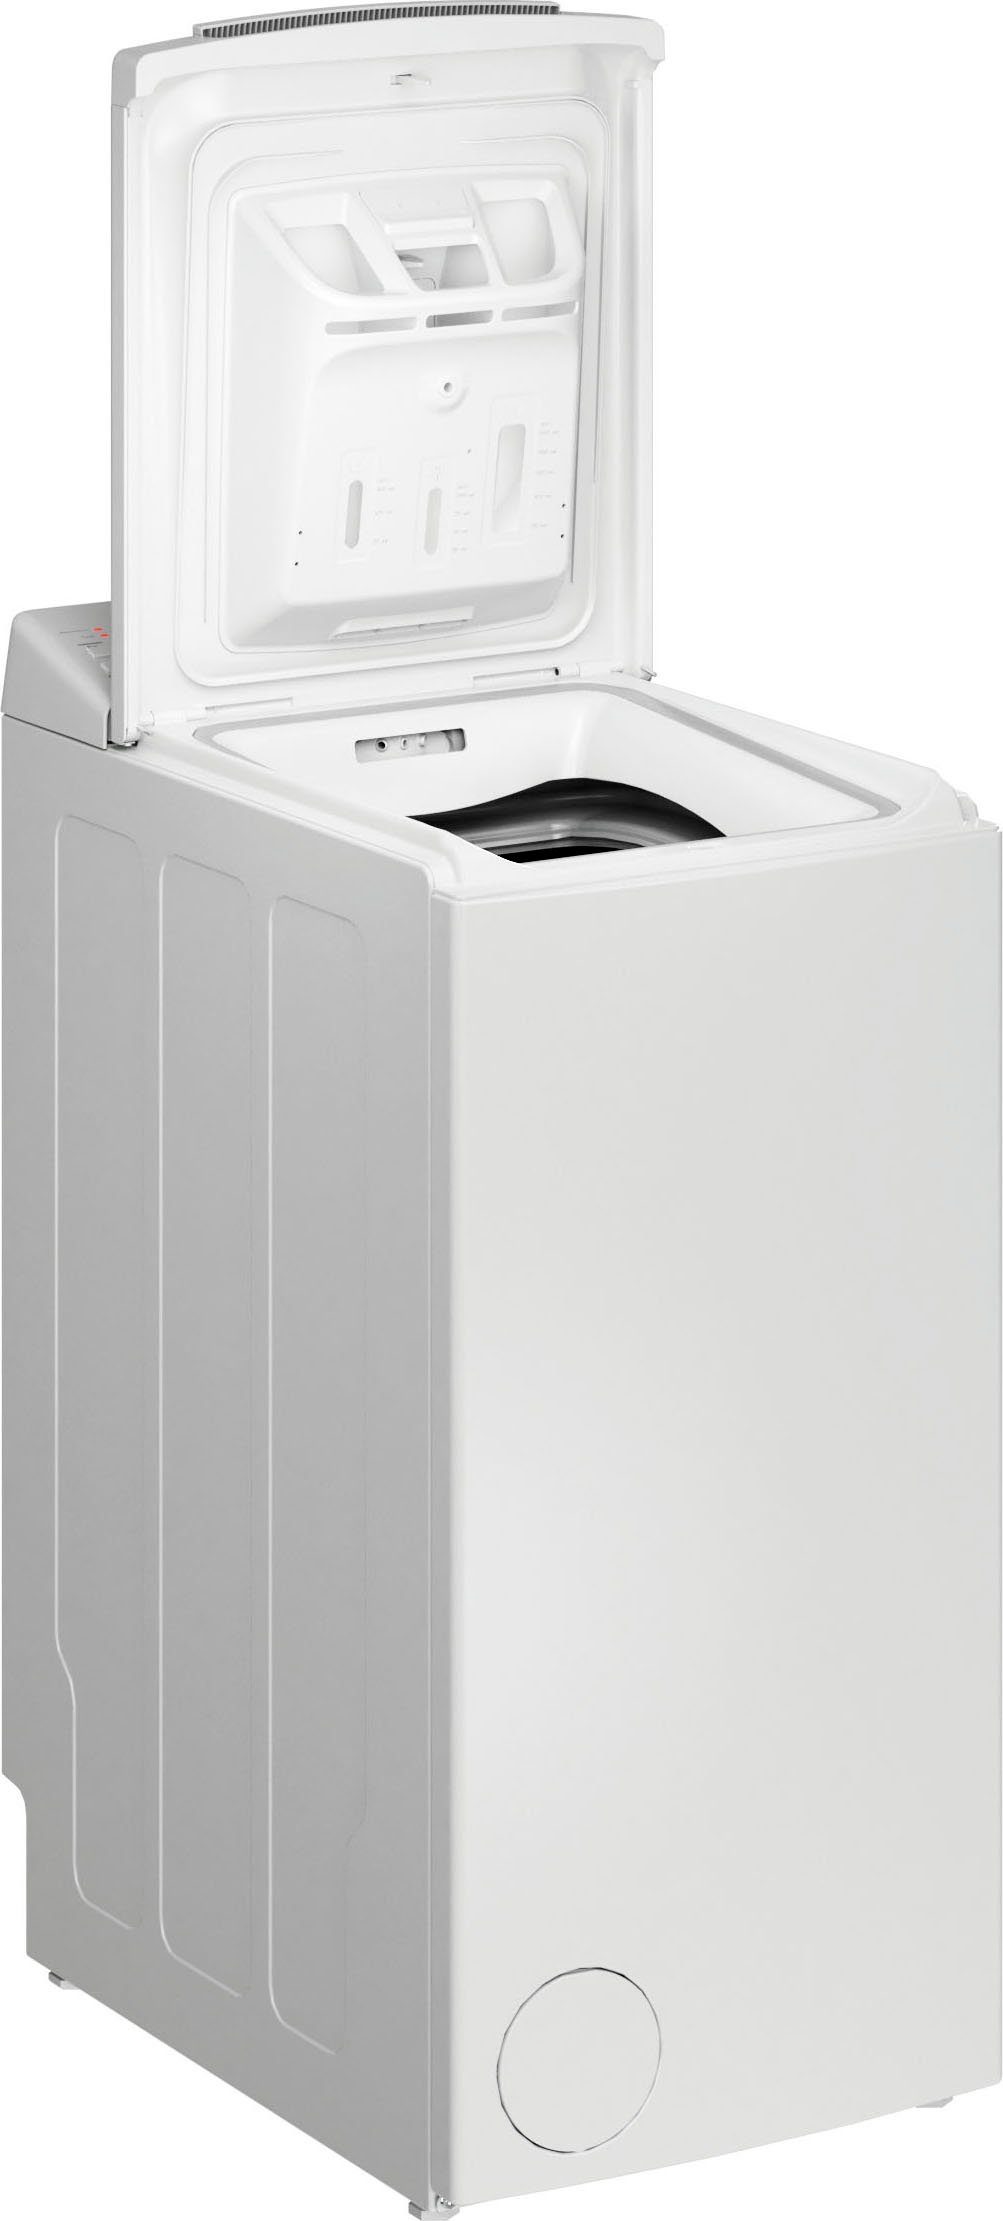 BAUKNECHT Waschmaschine Toplader WAT Smart Eco 12C, 6 kg, 1200 U/min | Toplader